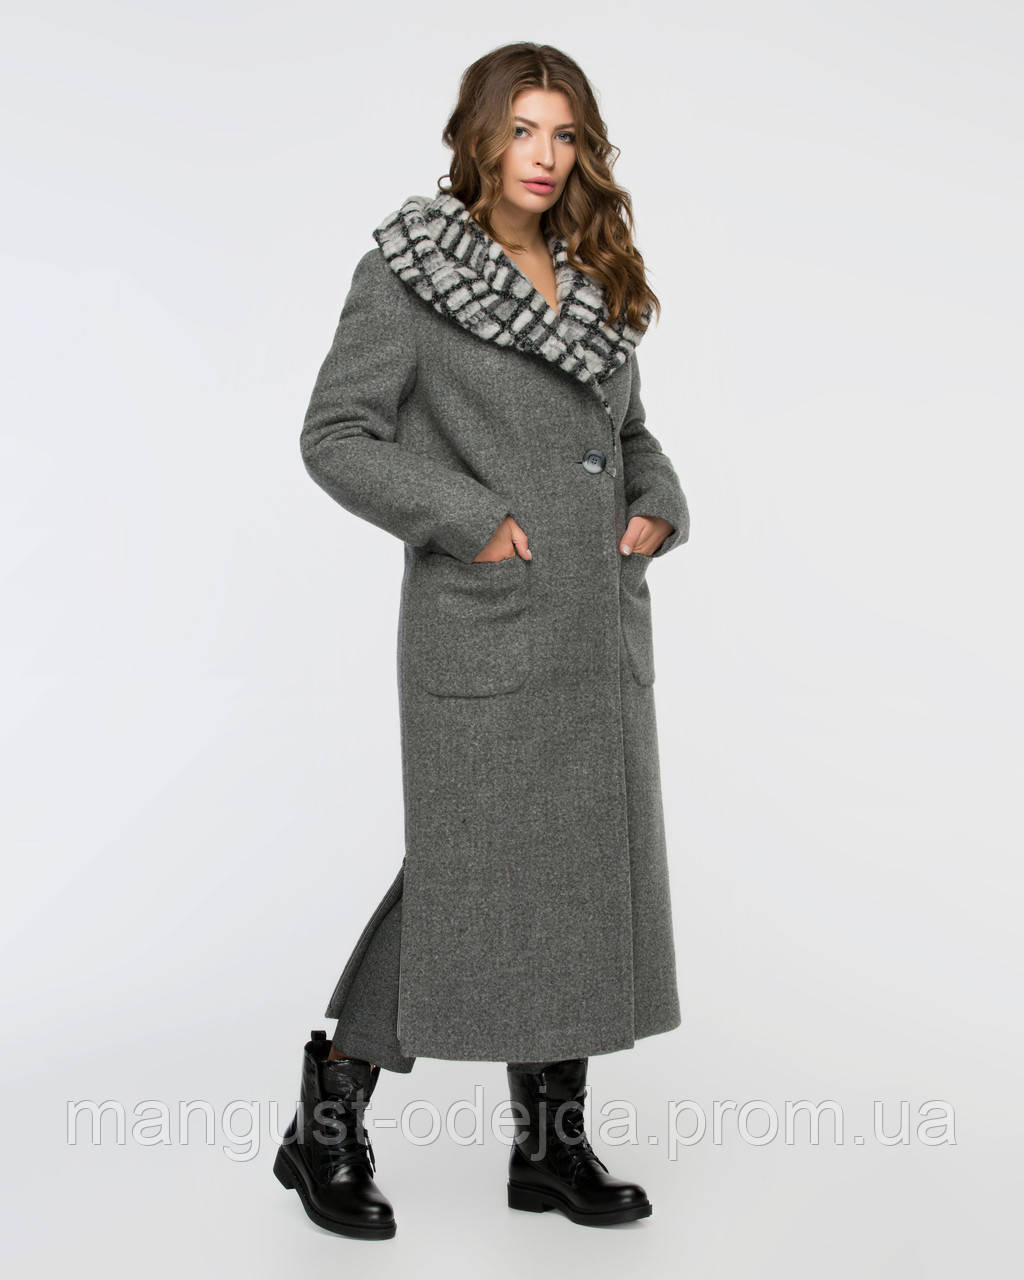 

Женское зимнее пальто с капюшоном рр 42-46